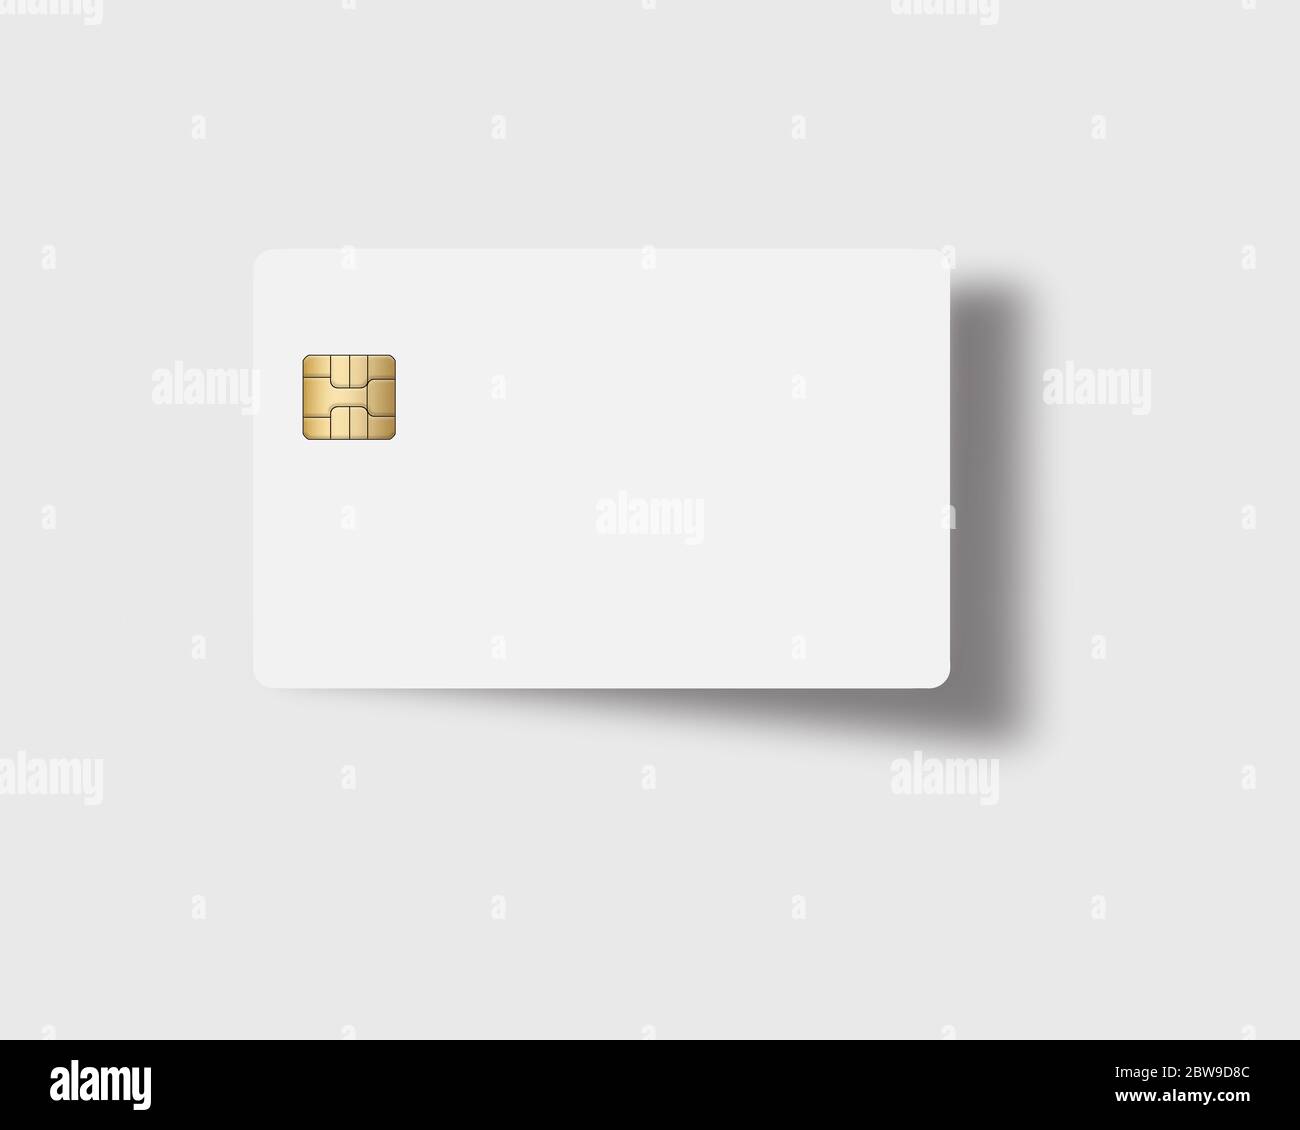 Aquí está una tarjeta blanca de crédito o débito con un chip EMV dorado. Área de texto. Copiar área. La tarjeta proyecta una sombra sobre un fondo gris claro. Foto de stock